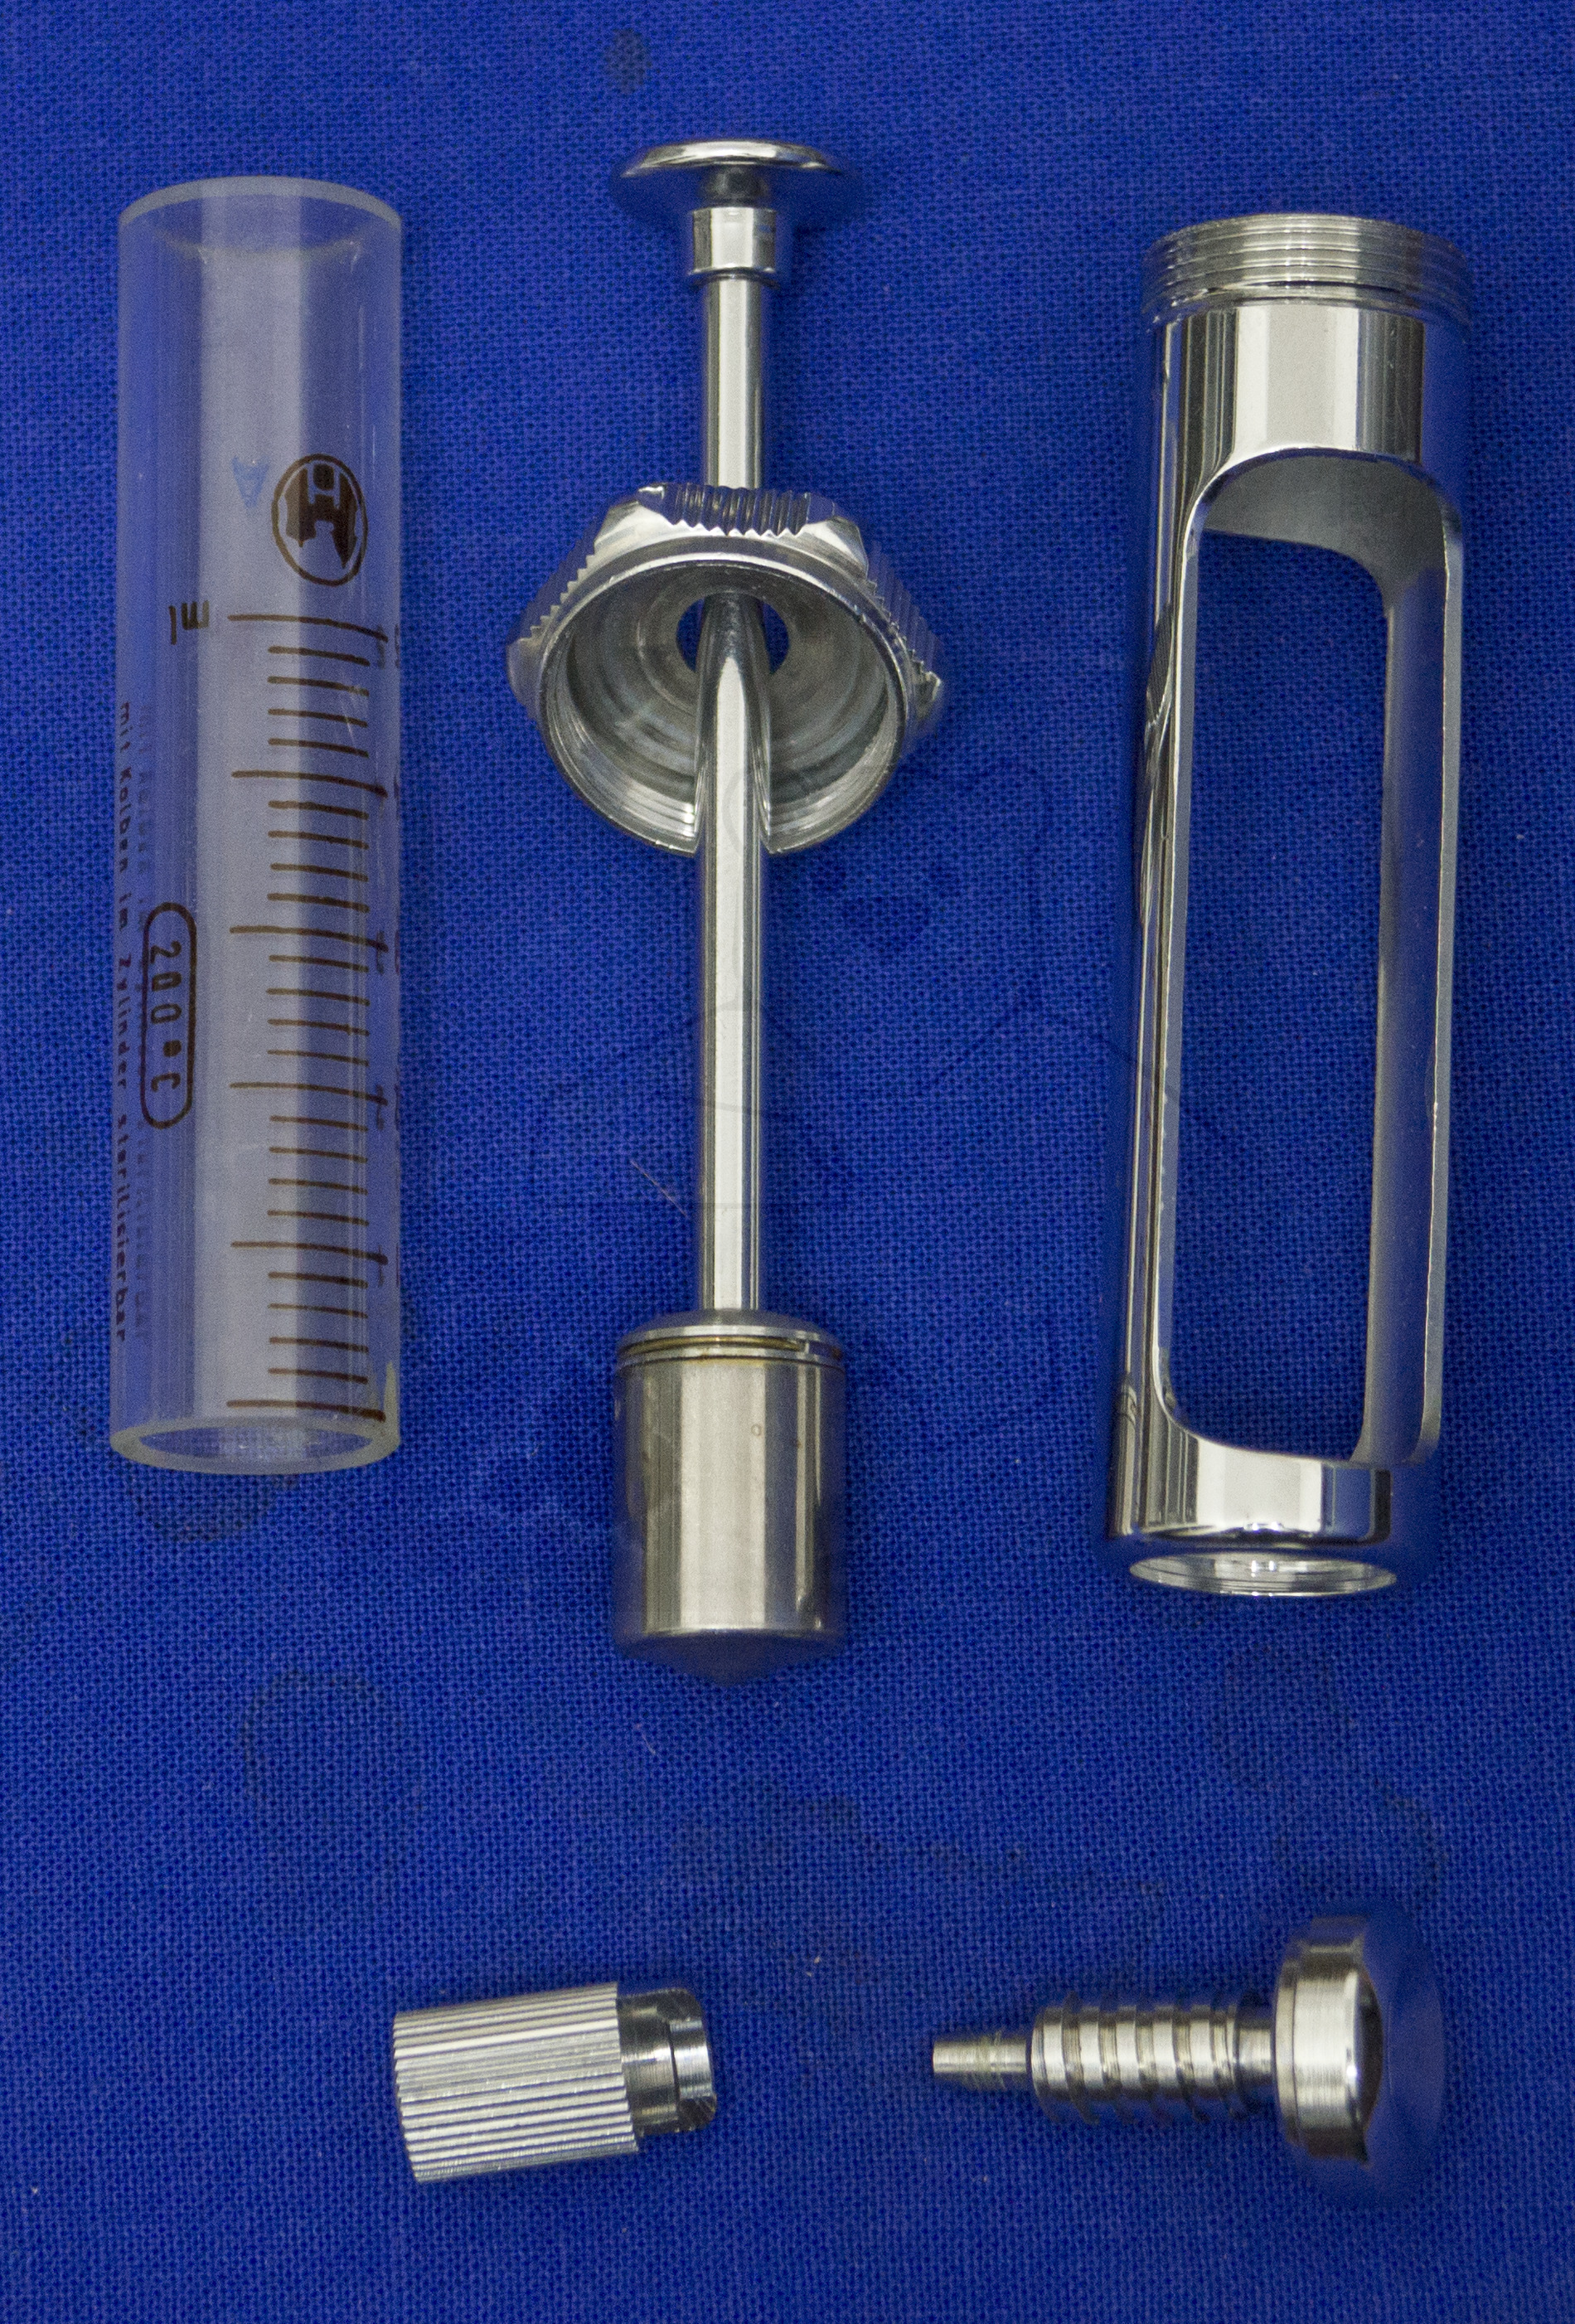 "Ultra Asept" von Henke-Sass, 5ml Volumen, arretierbare Kanüle, für Serum Injektionen, Demontierte Spritze